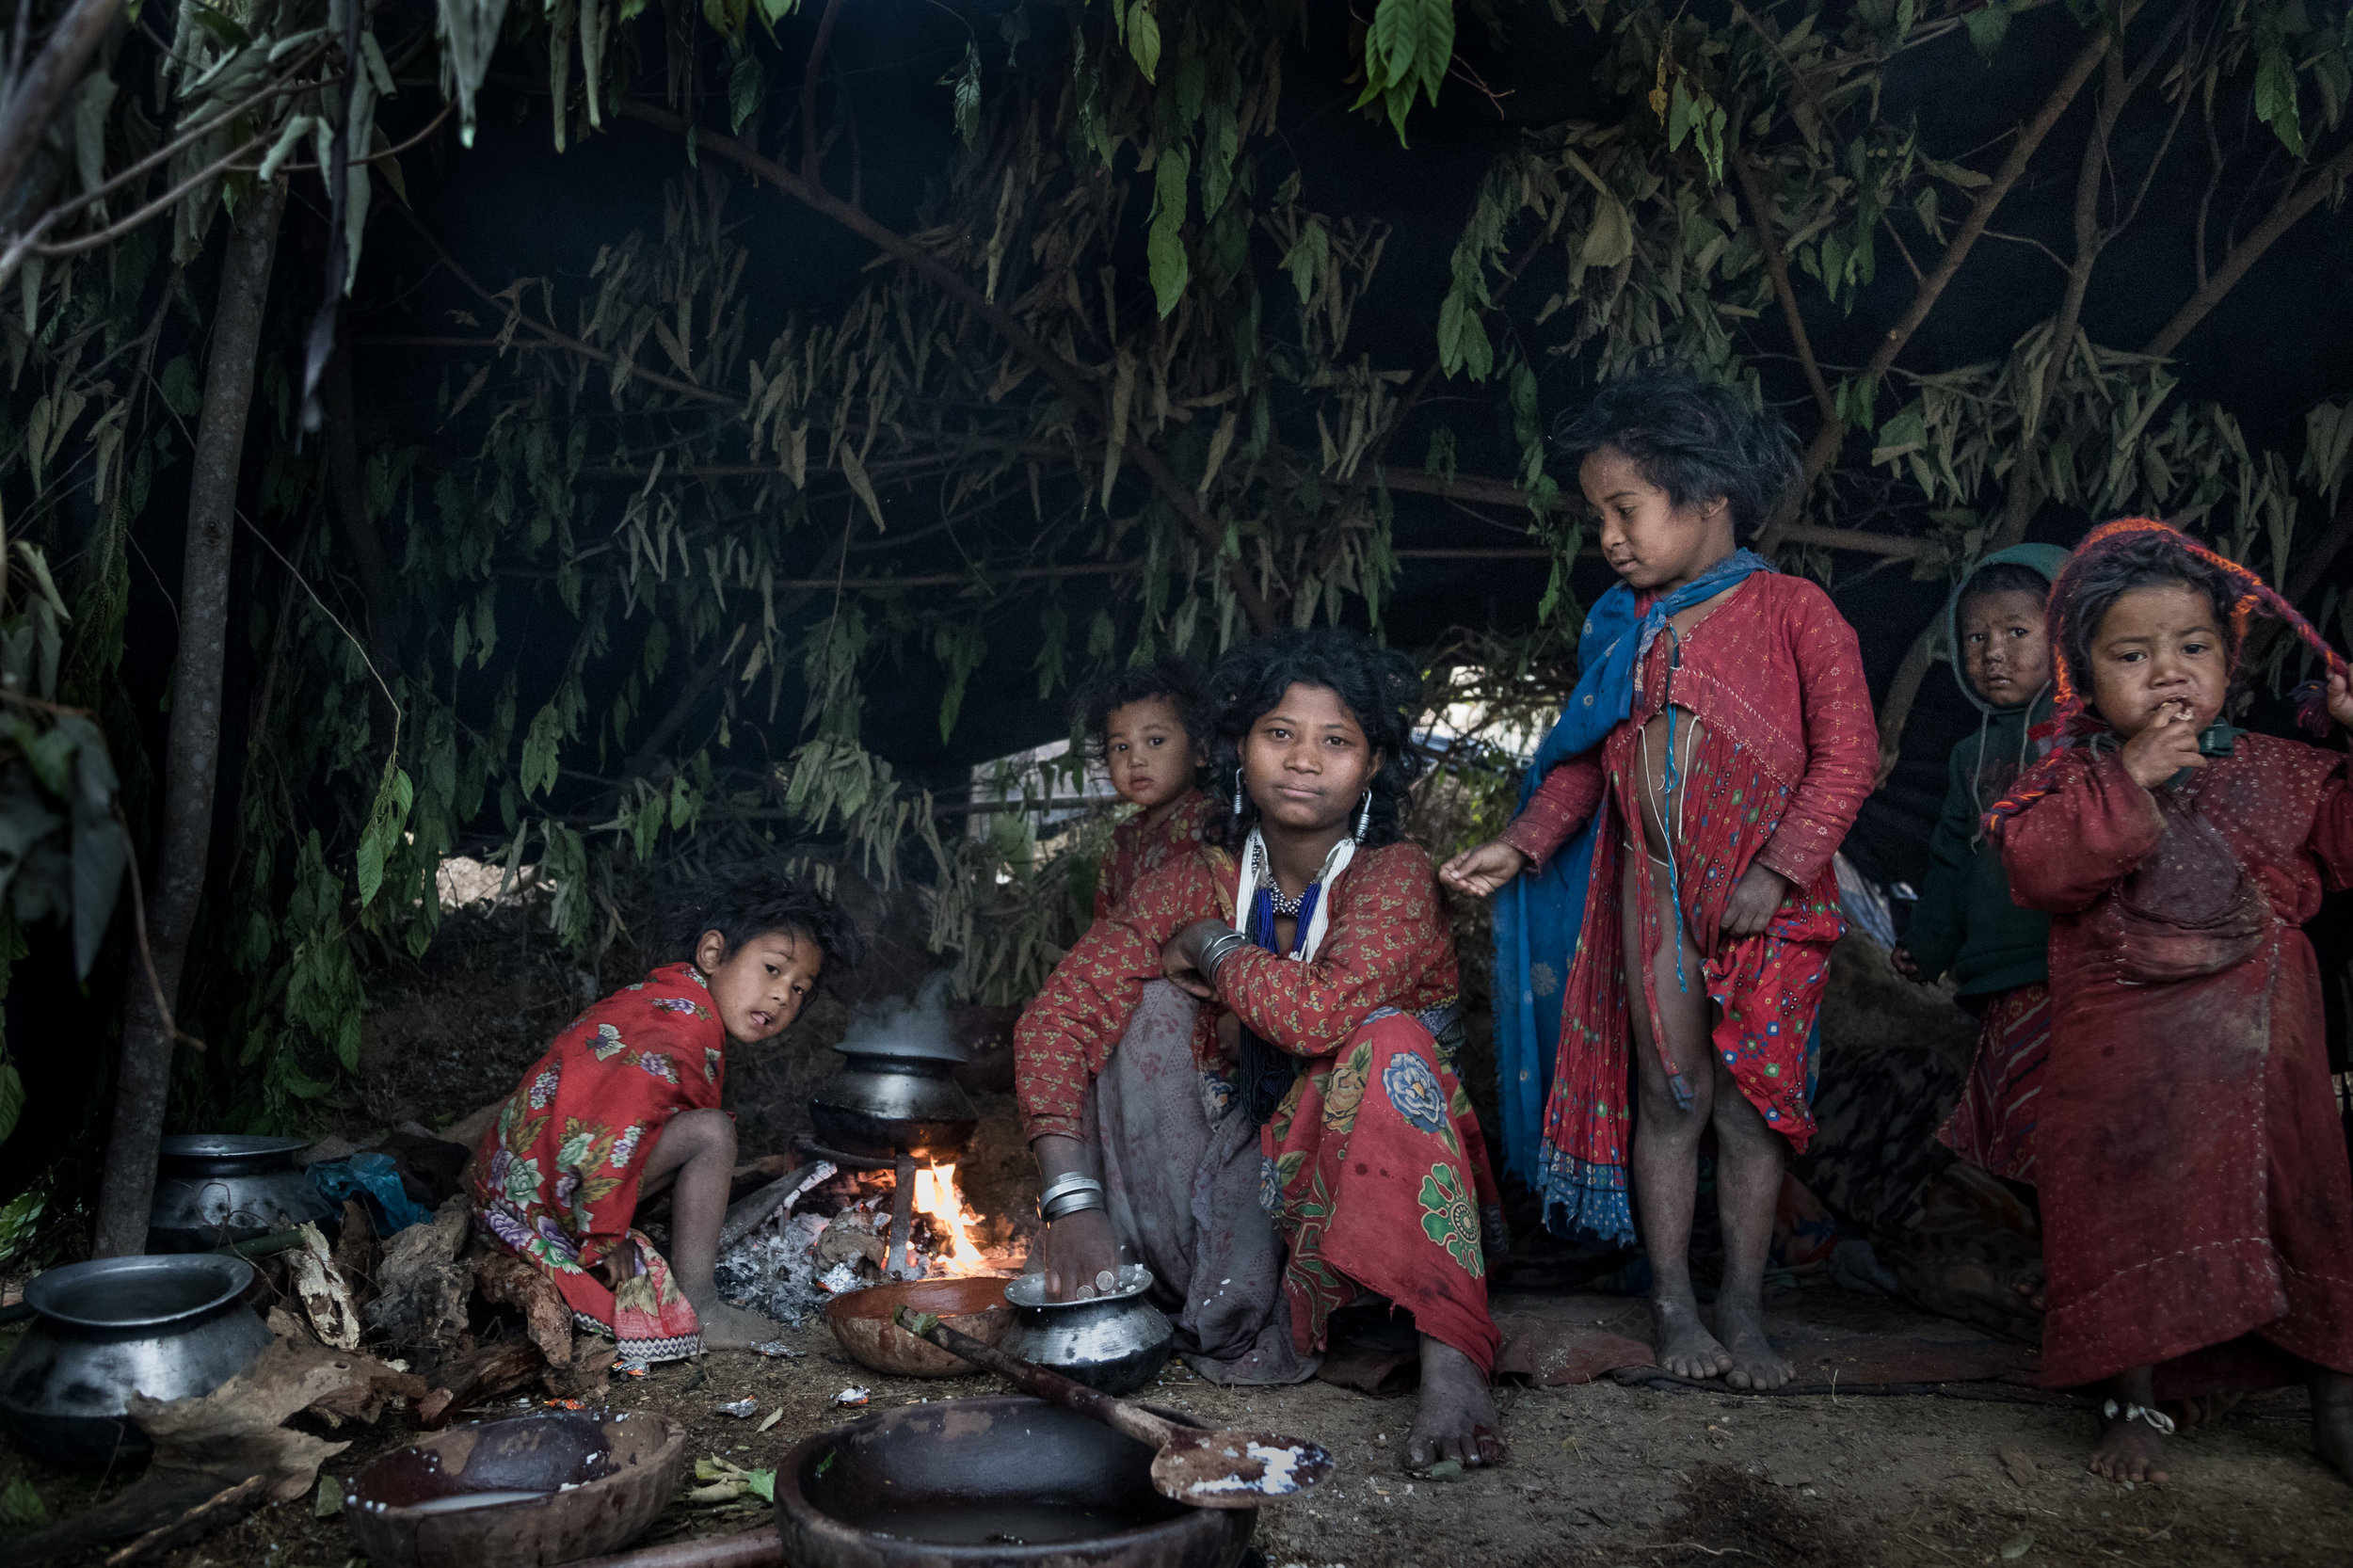   Raute: de laatste nomaden van Nepal    Klederdracht  